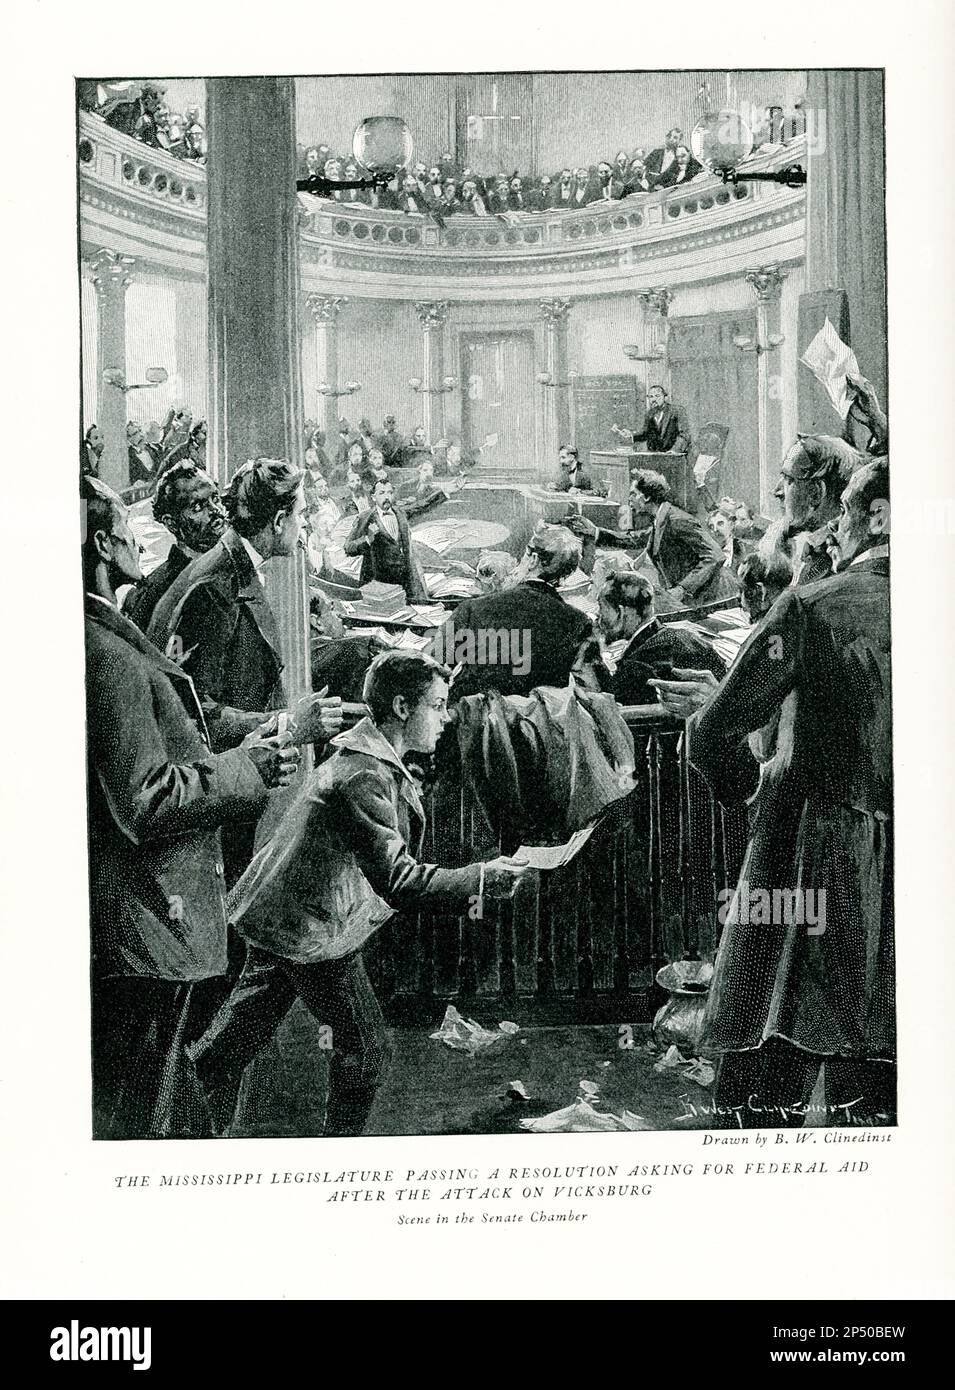 La didascalia del 1896v recita: 'La legislatura del Mississippi che passa una risoluzione chiedendo aiuti federali dopo un attacco alla scena di Vicksburg nella Camera del Senato' – 1870s. Foto Stock